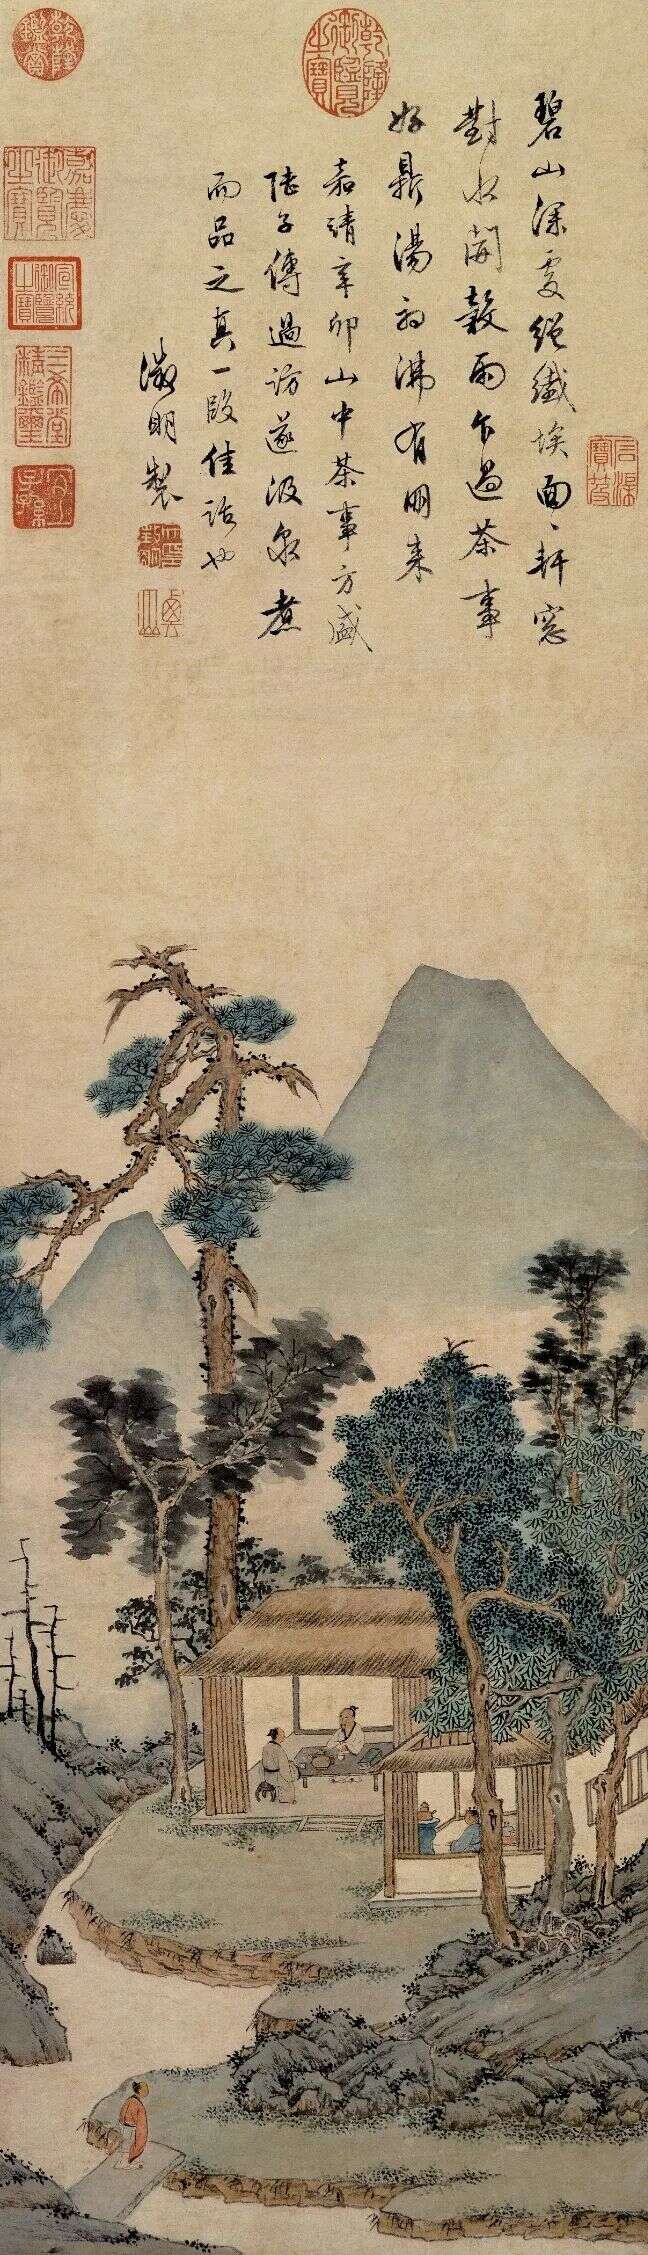 陆羽茶交所科普丨从古画中看中国人饮茶法的演变